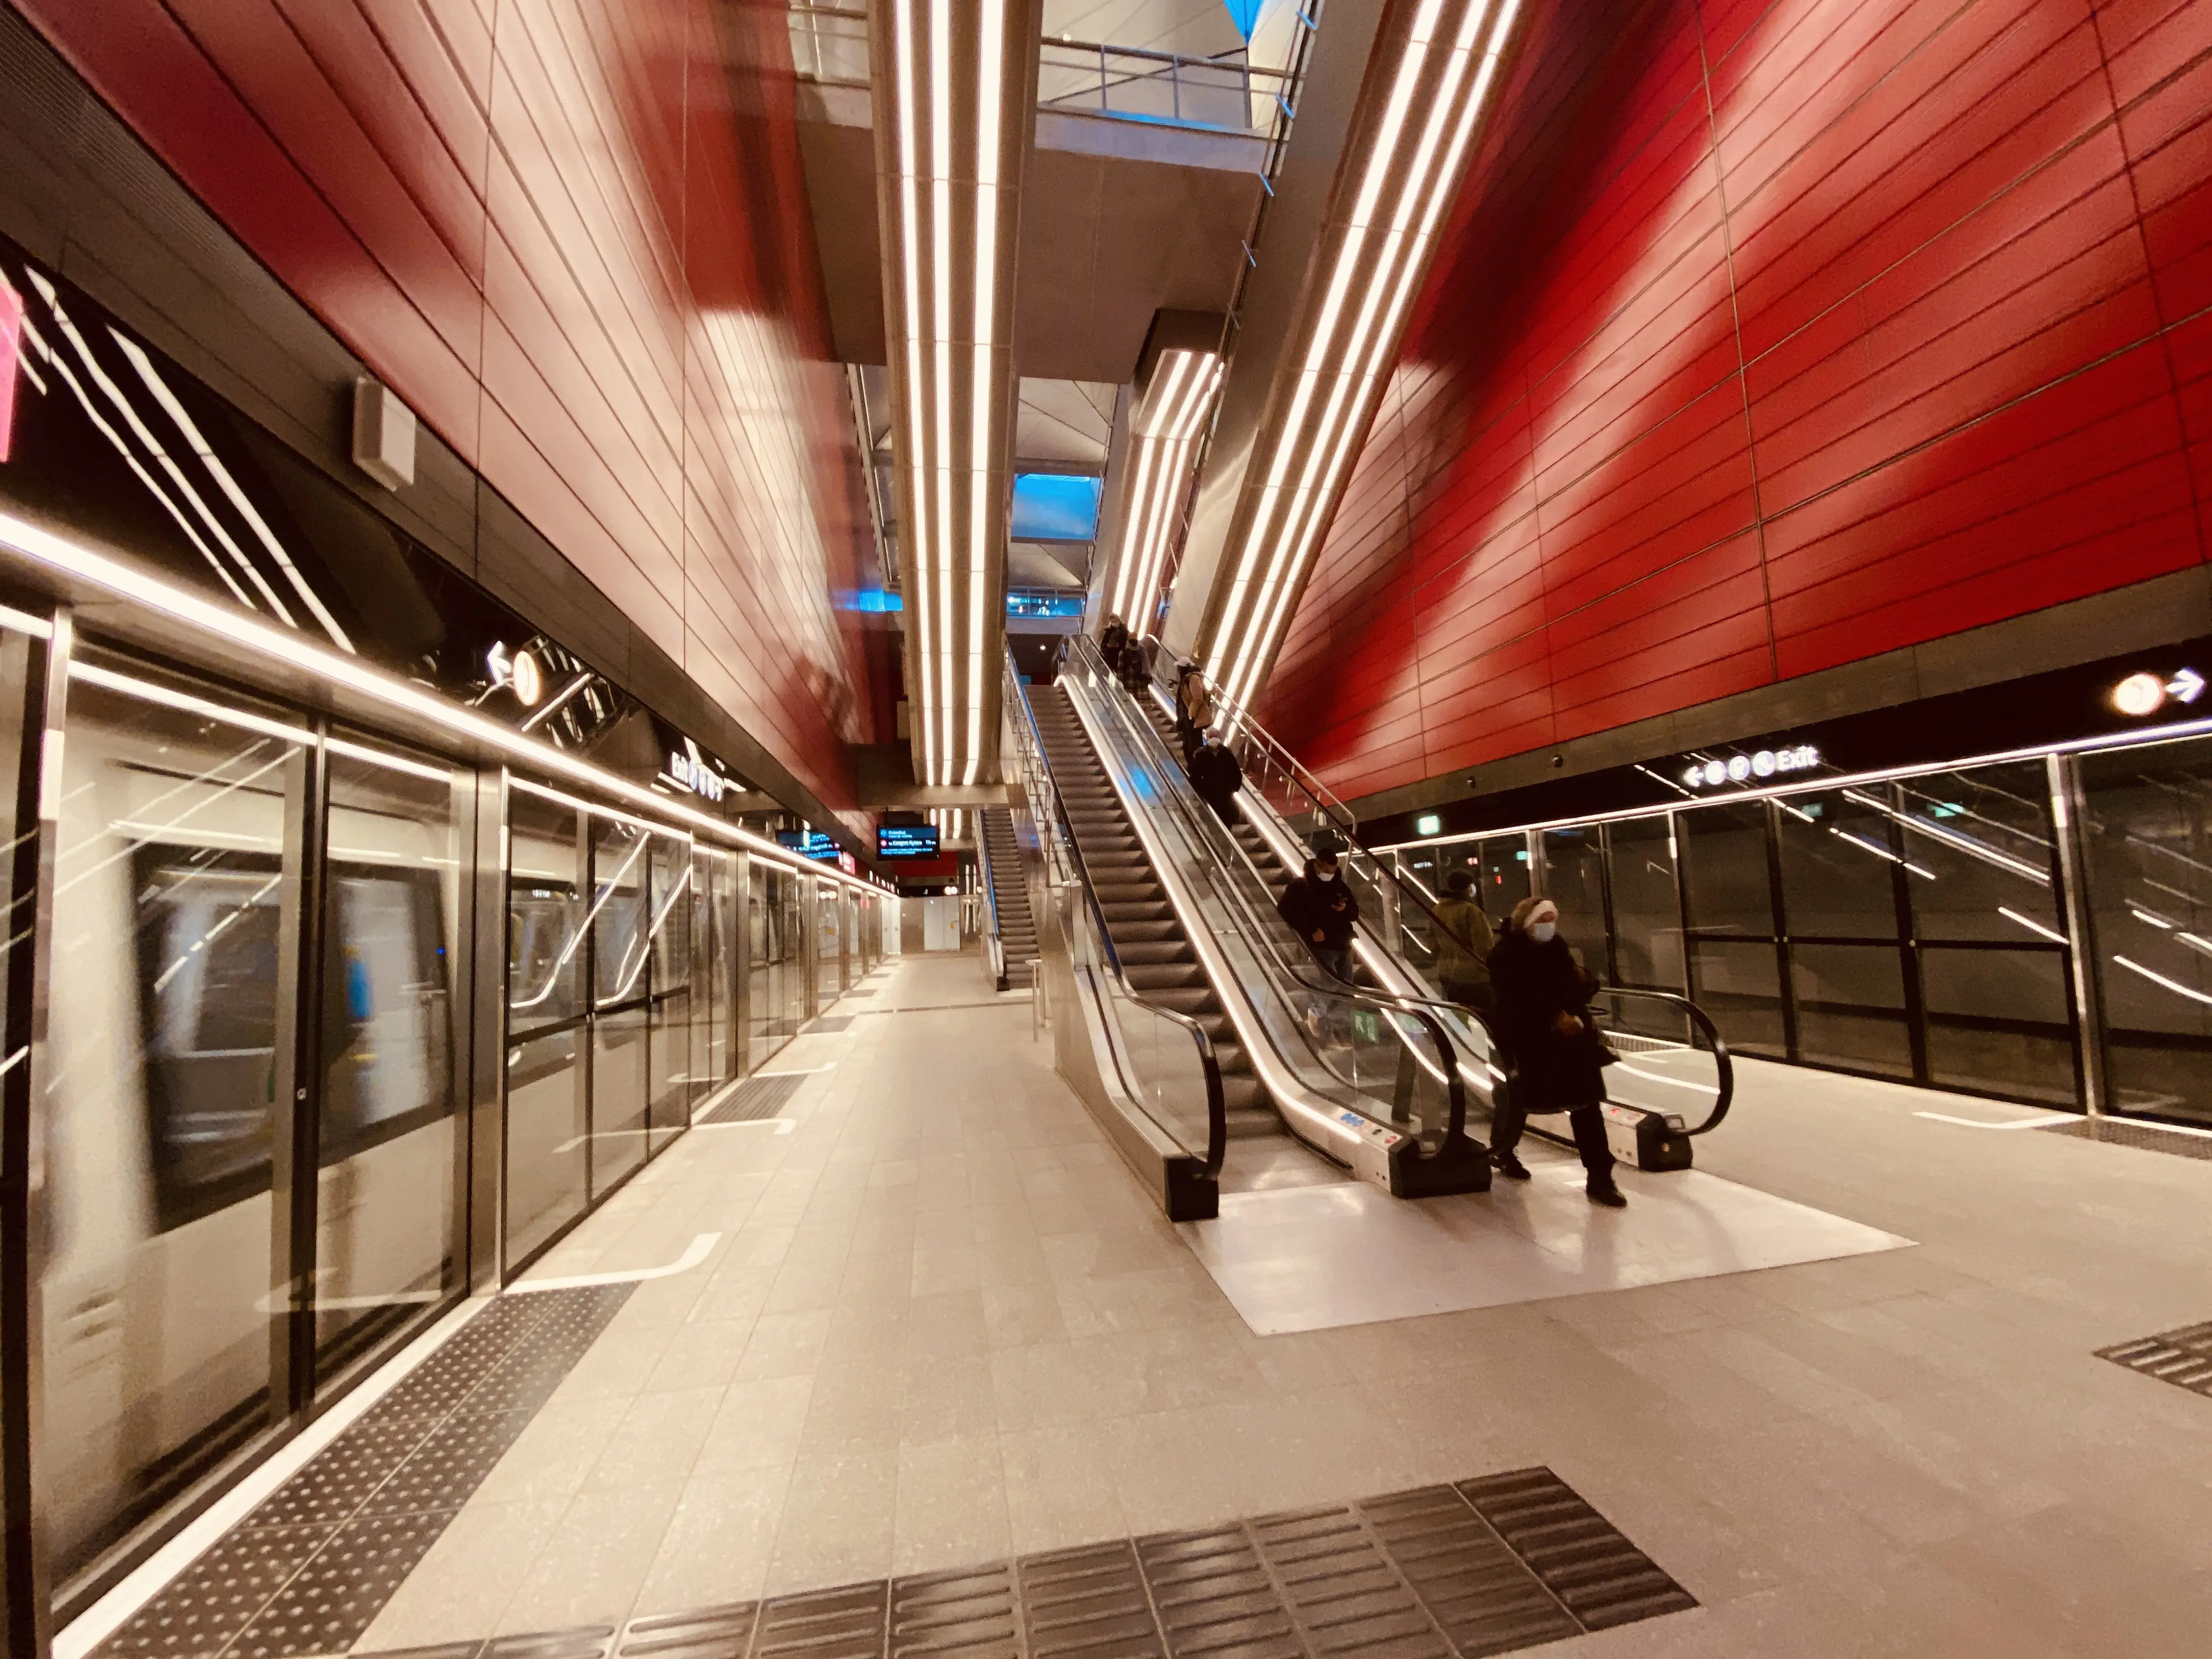 København H Metrostation har en varm og dyb rød farve, der signalerer trafik, transport og transit.